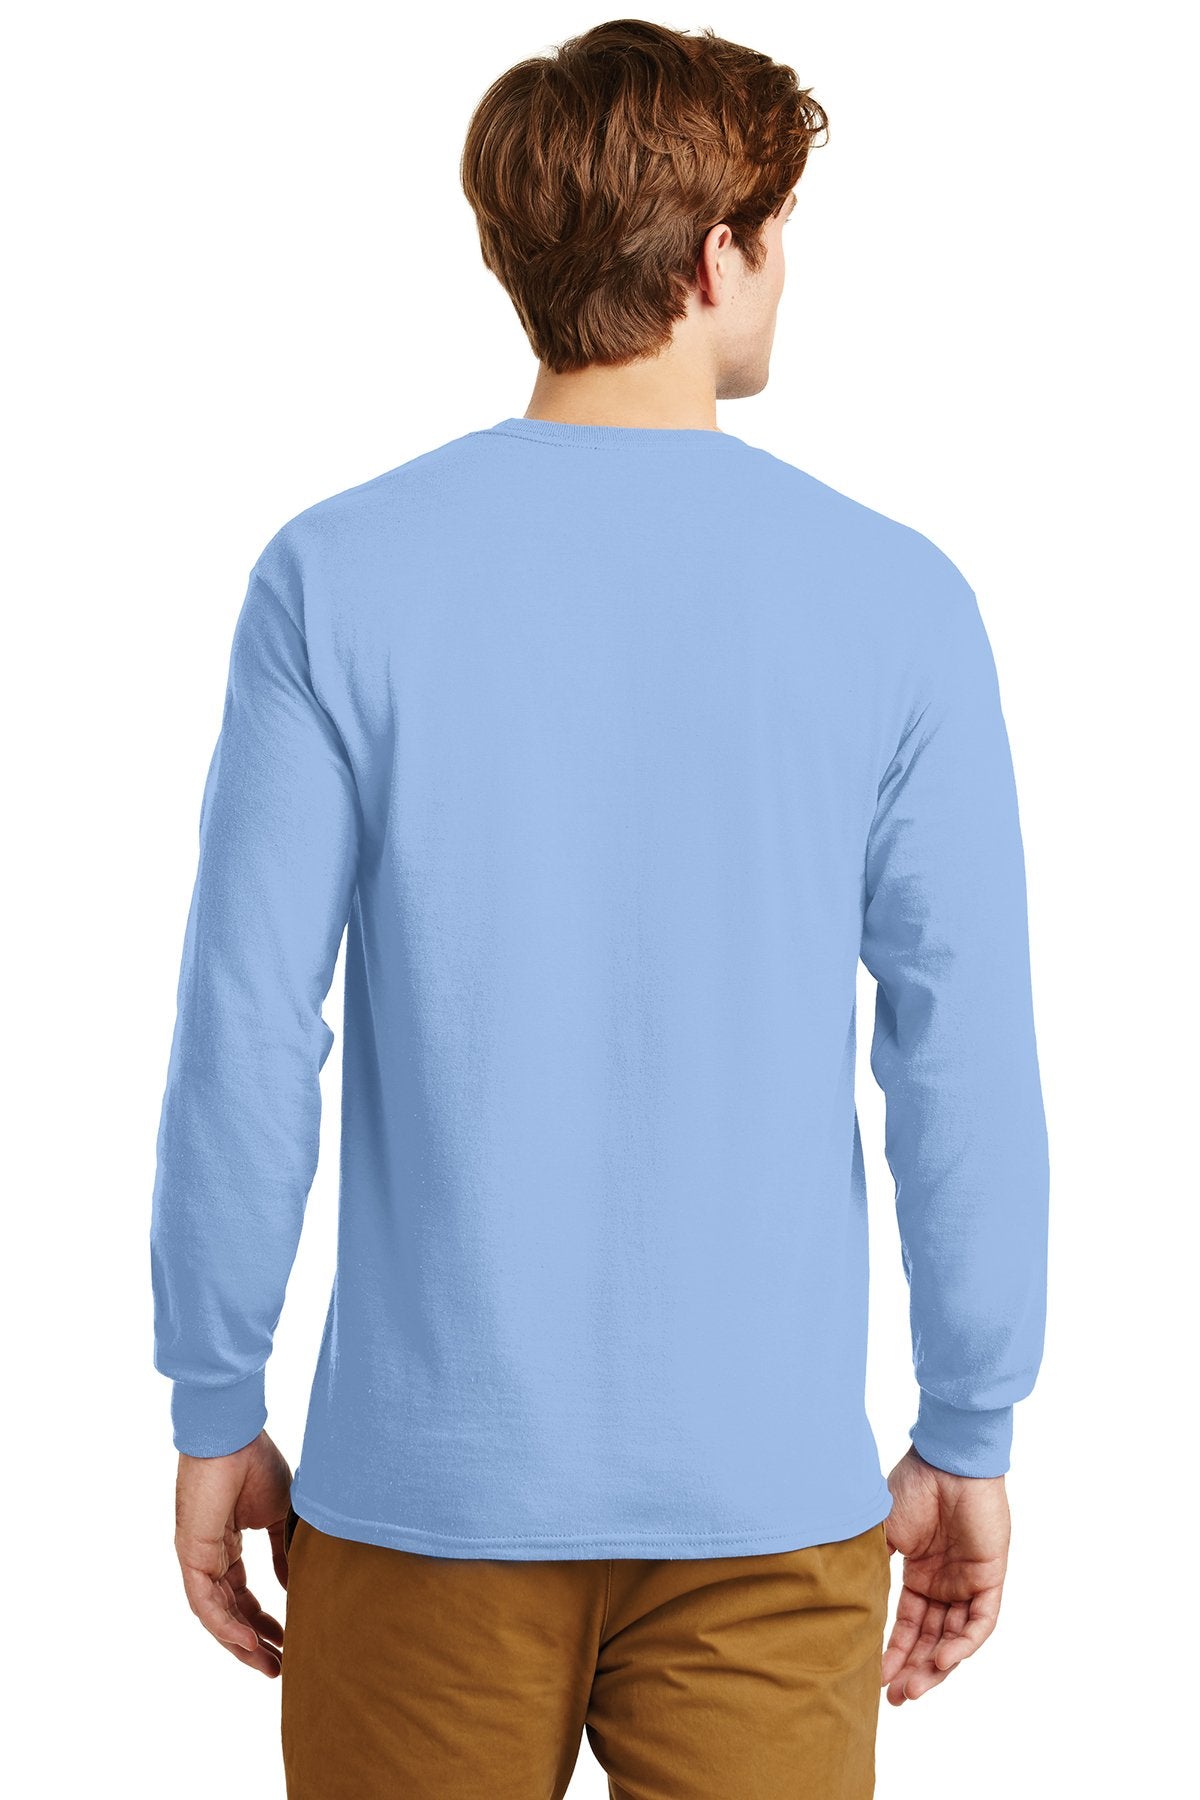 gildan ultra cotton long sleeve t shirt g2400 light blue